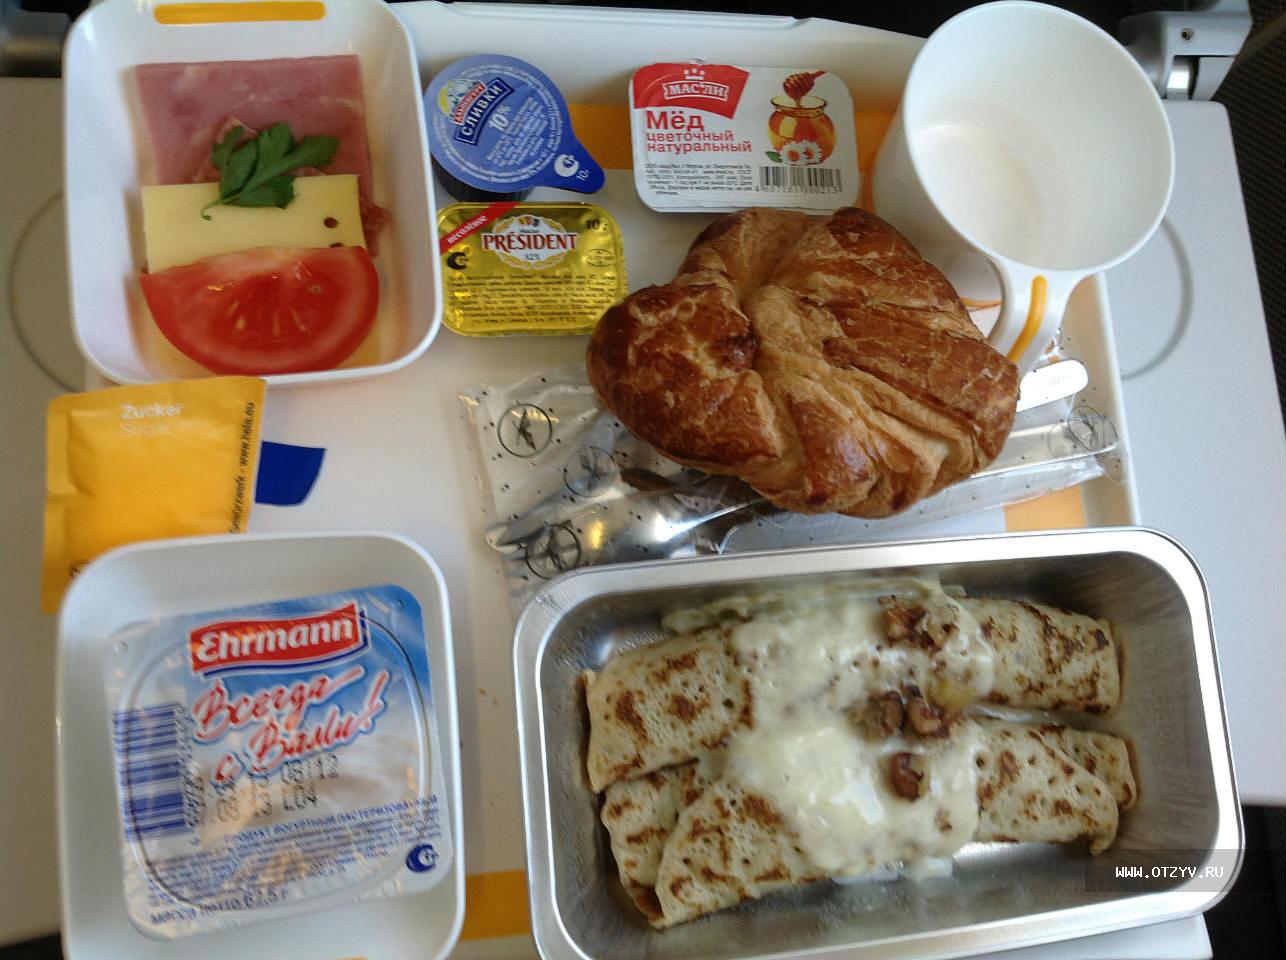 Основное питание входит в билет. Питание в поезде. Еда в поезд. Обед в поезде. Питание в поезде РЖД.